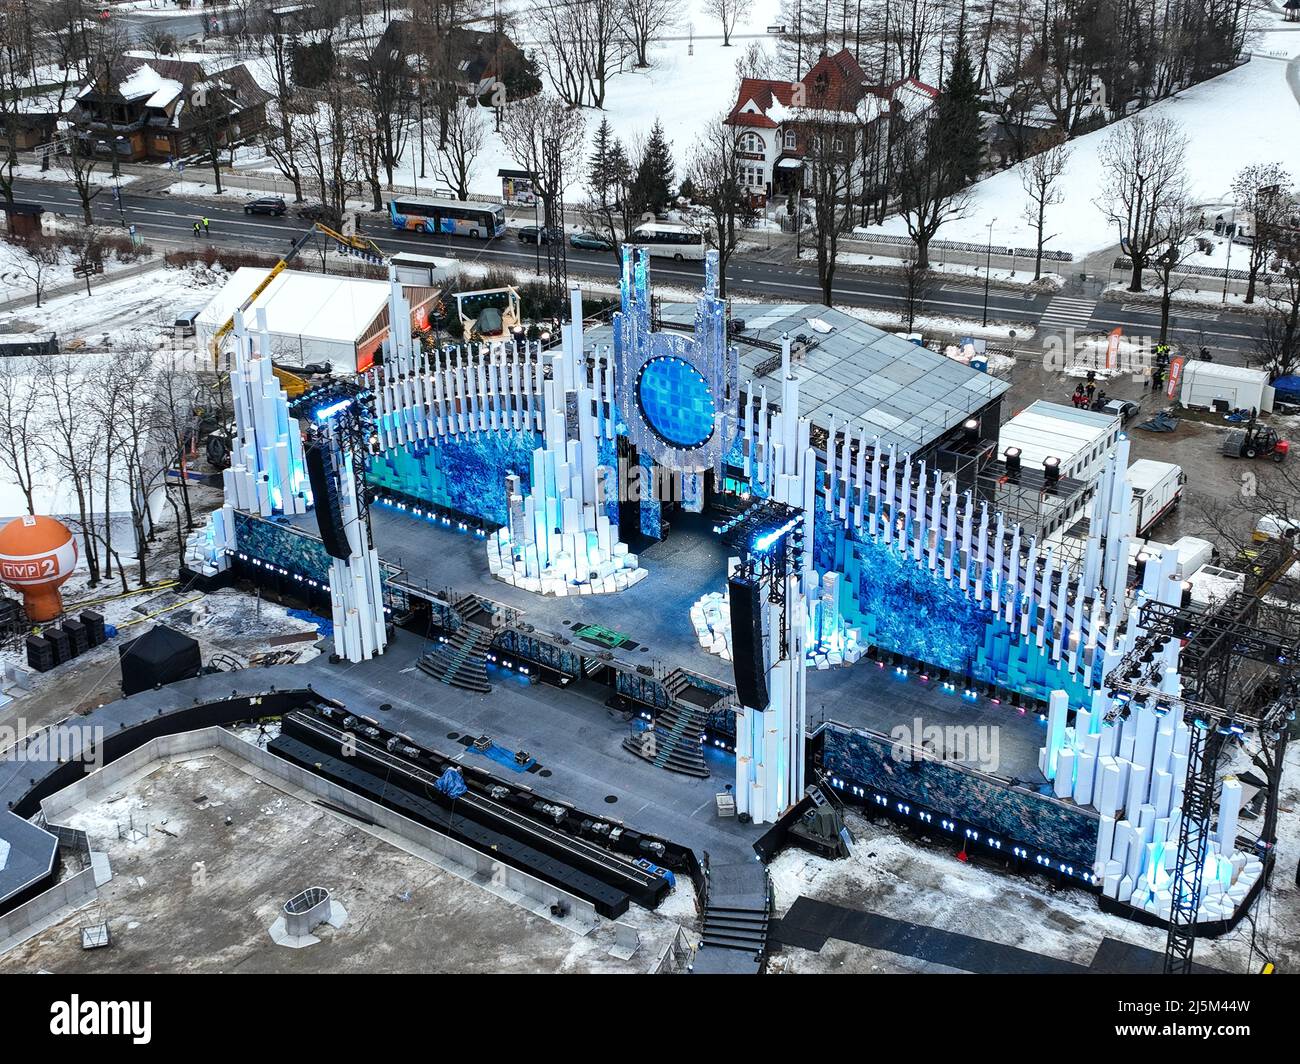 Vista aerea dei preparativi per la vigilia di Capodanno nella città di Zakopane in Polonia Foto Stock